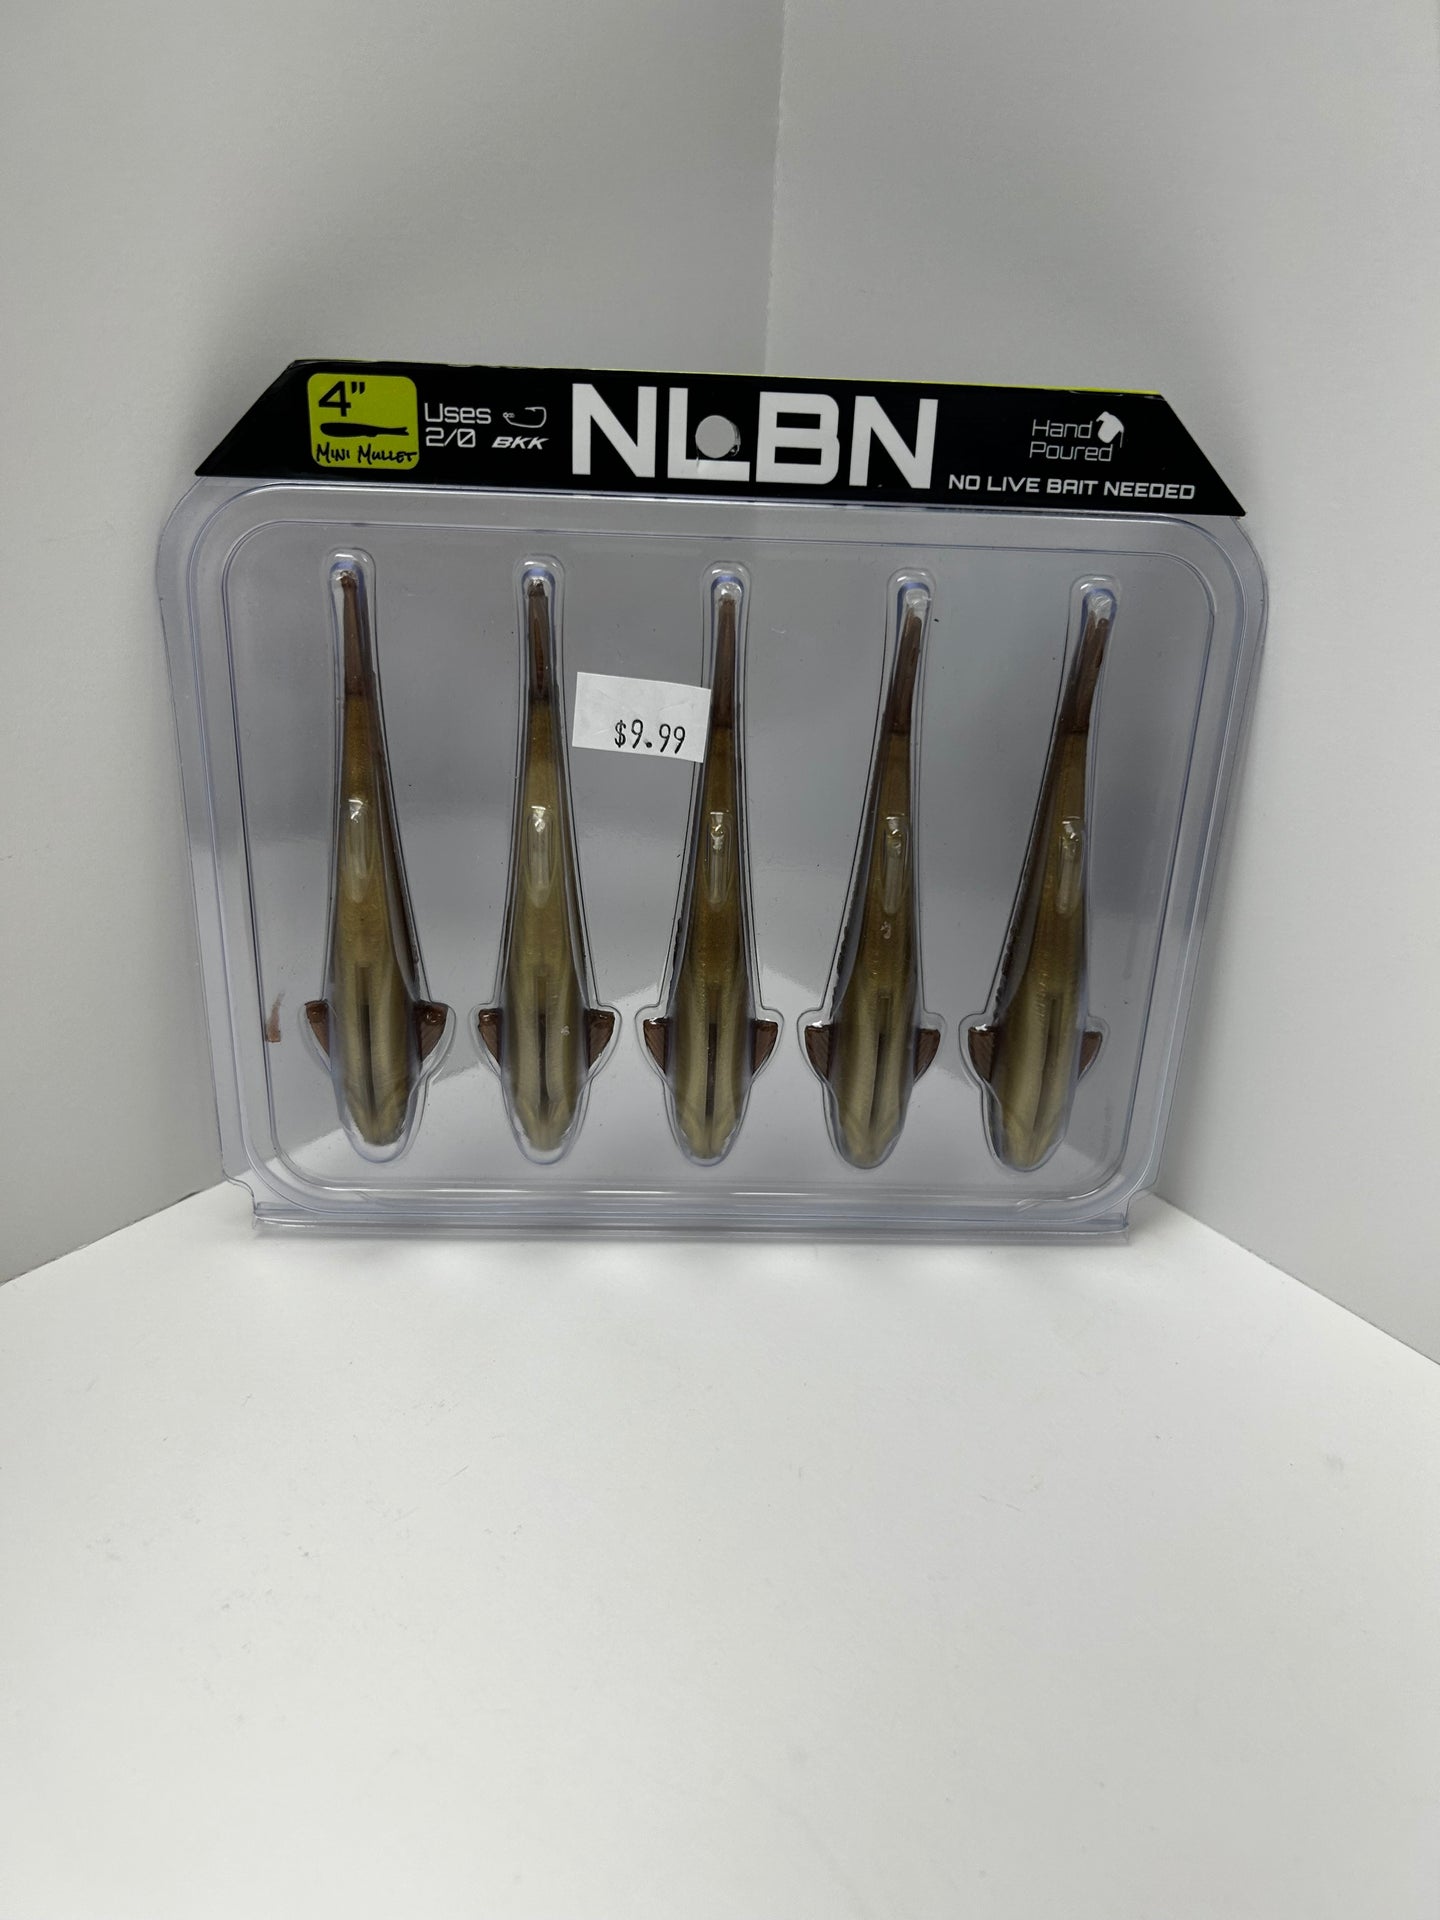 NLBN 4” Mini Mullet Twisted T